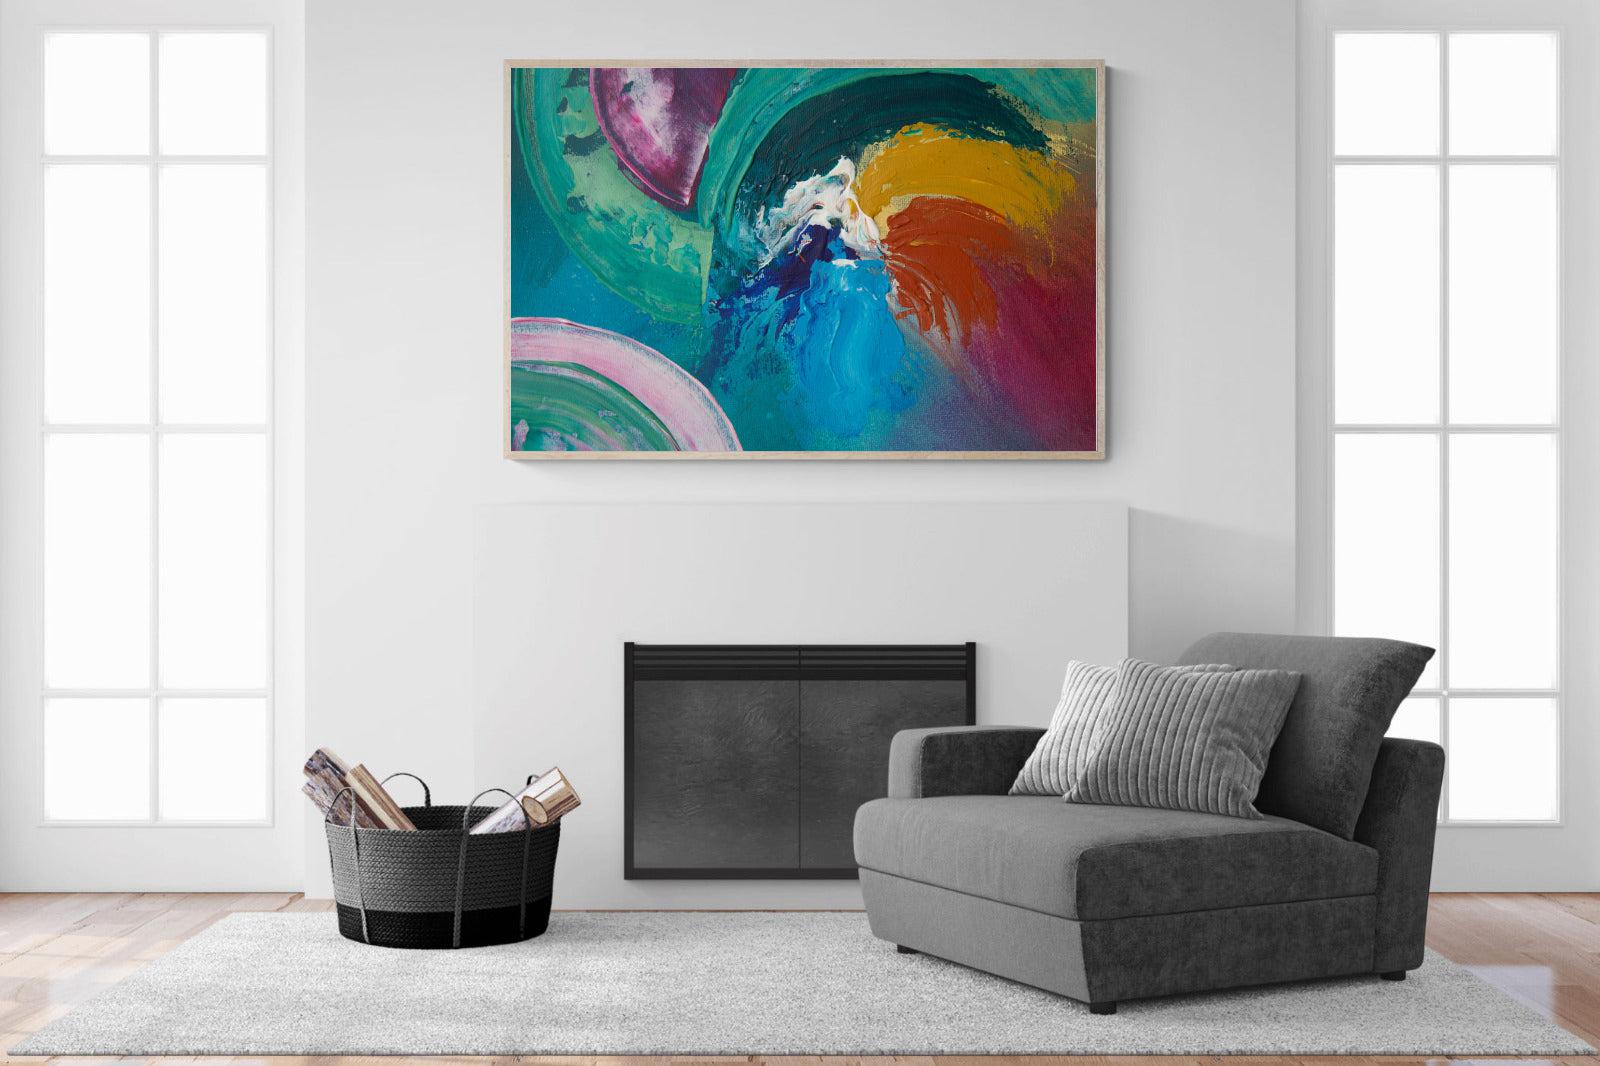 Vortex-Wall_Art-150 x 100cm-Mounted Canvas-Wood-Pixalot